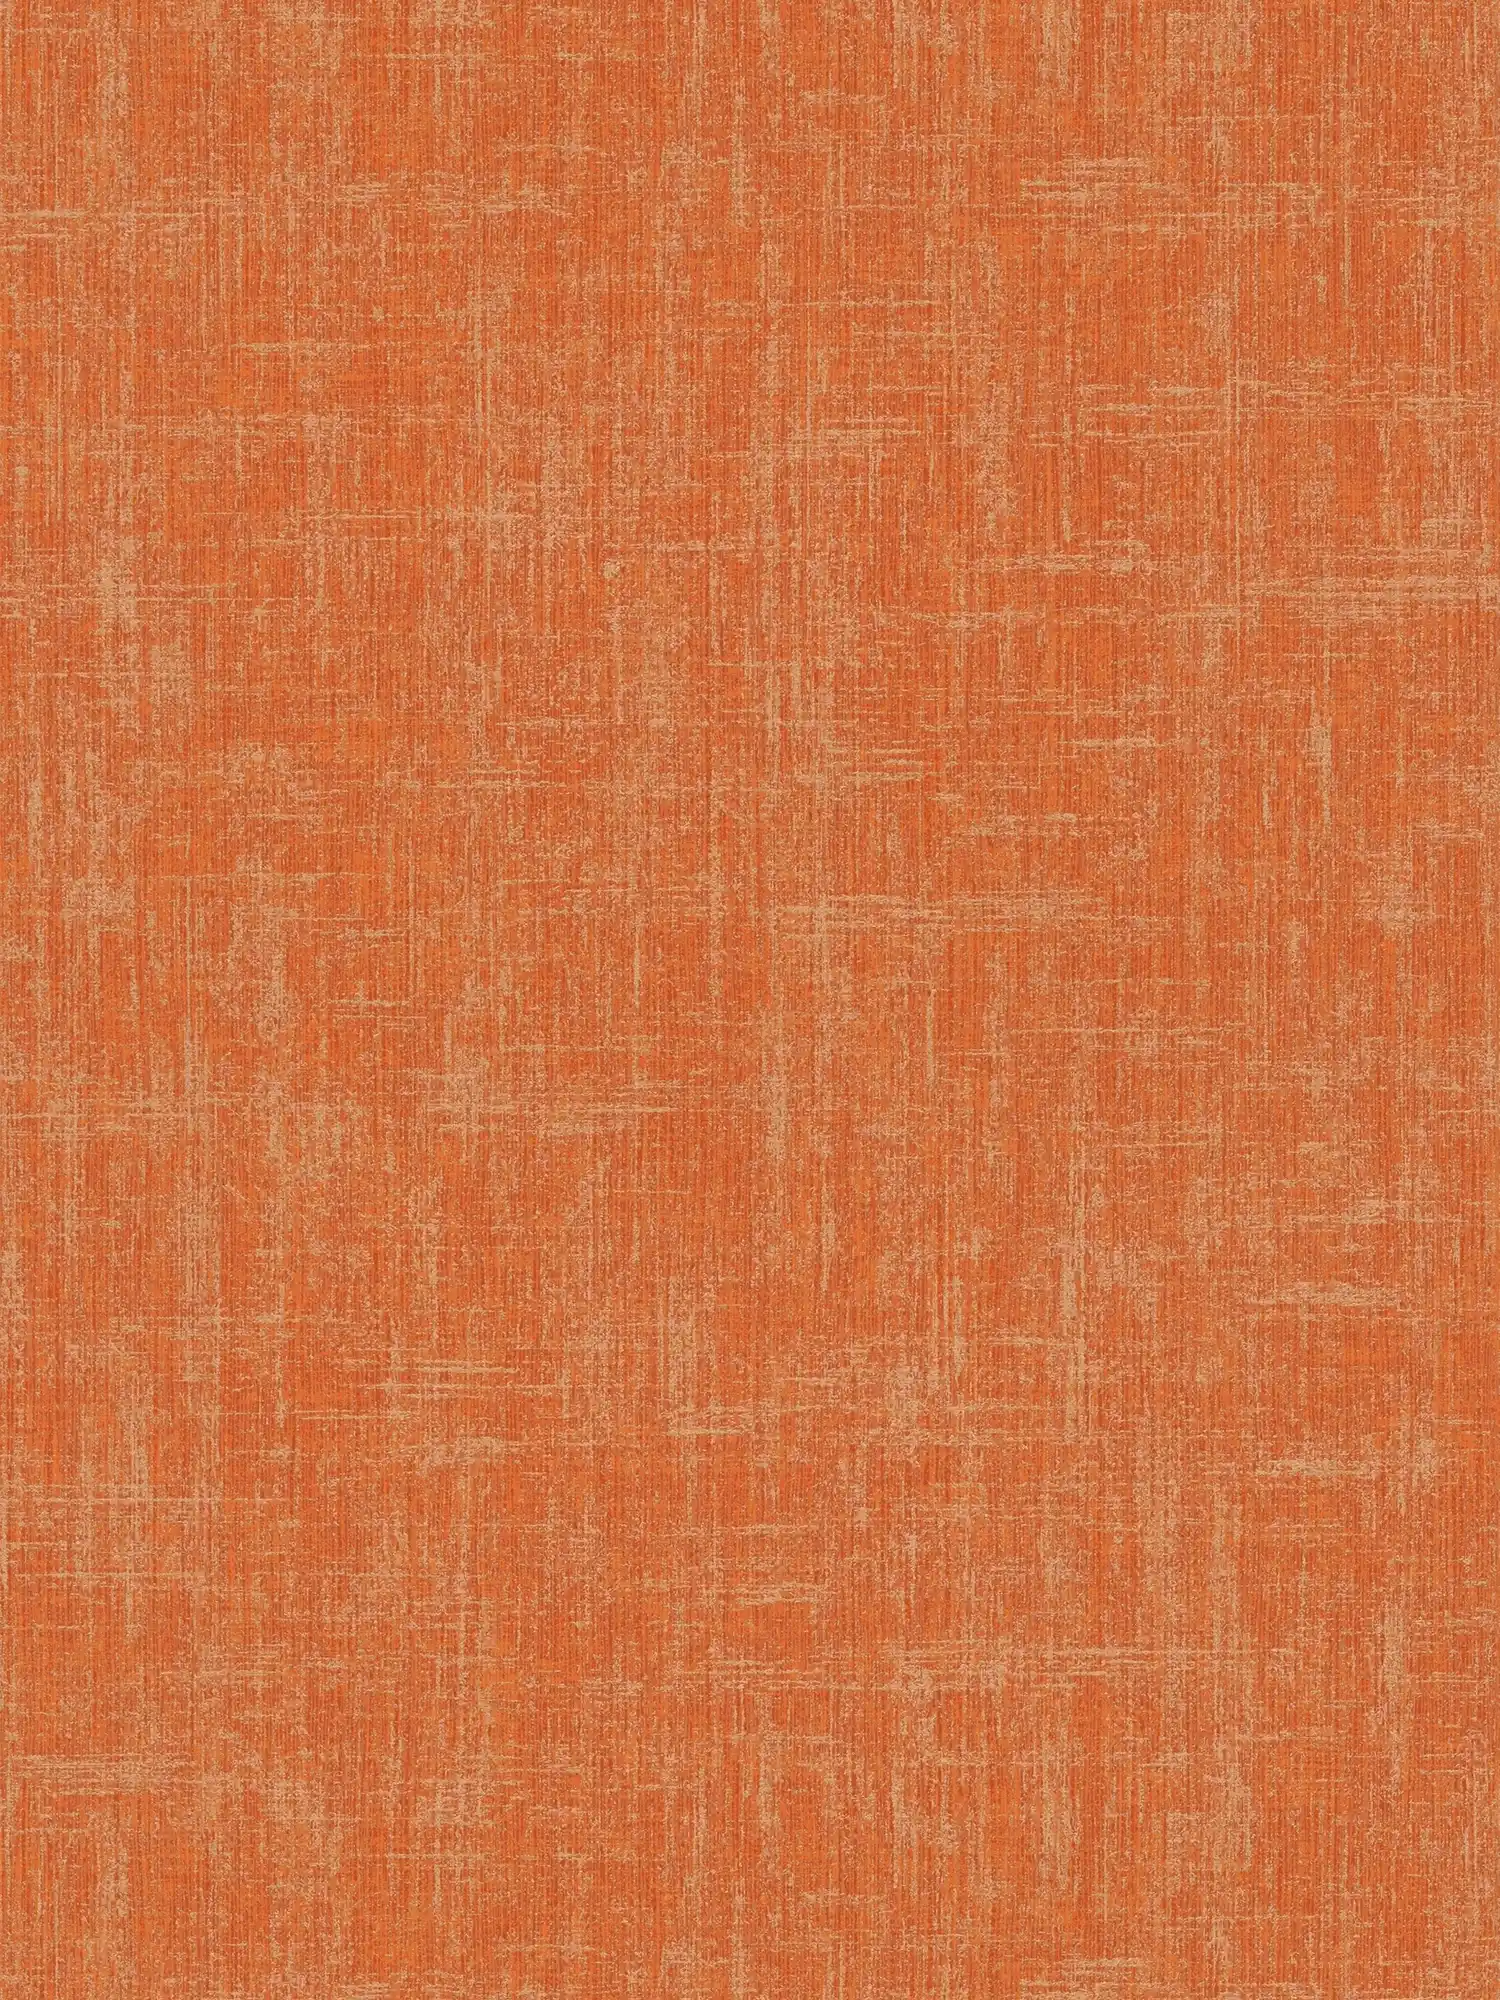 Carta da parati arancione con disegno a trama di lino
